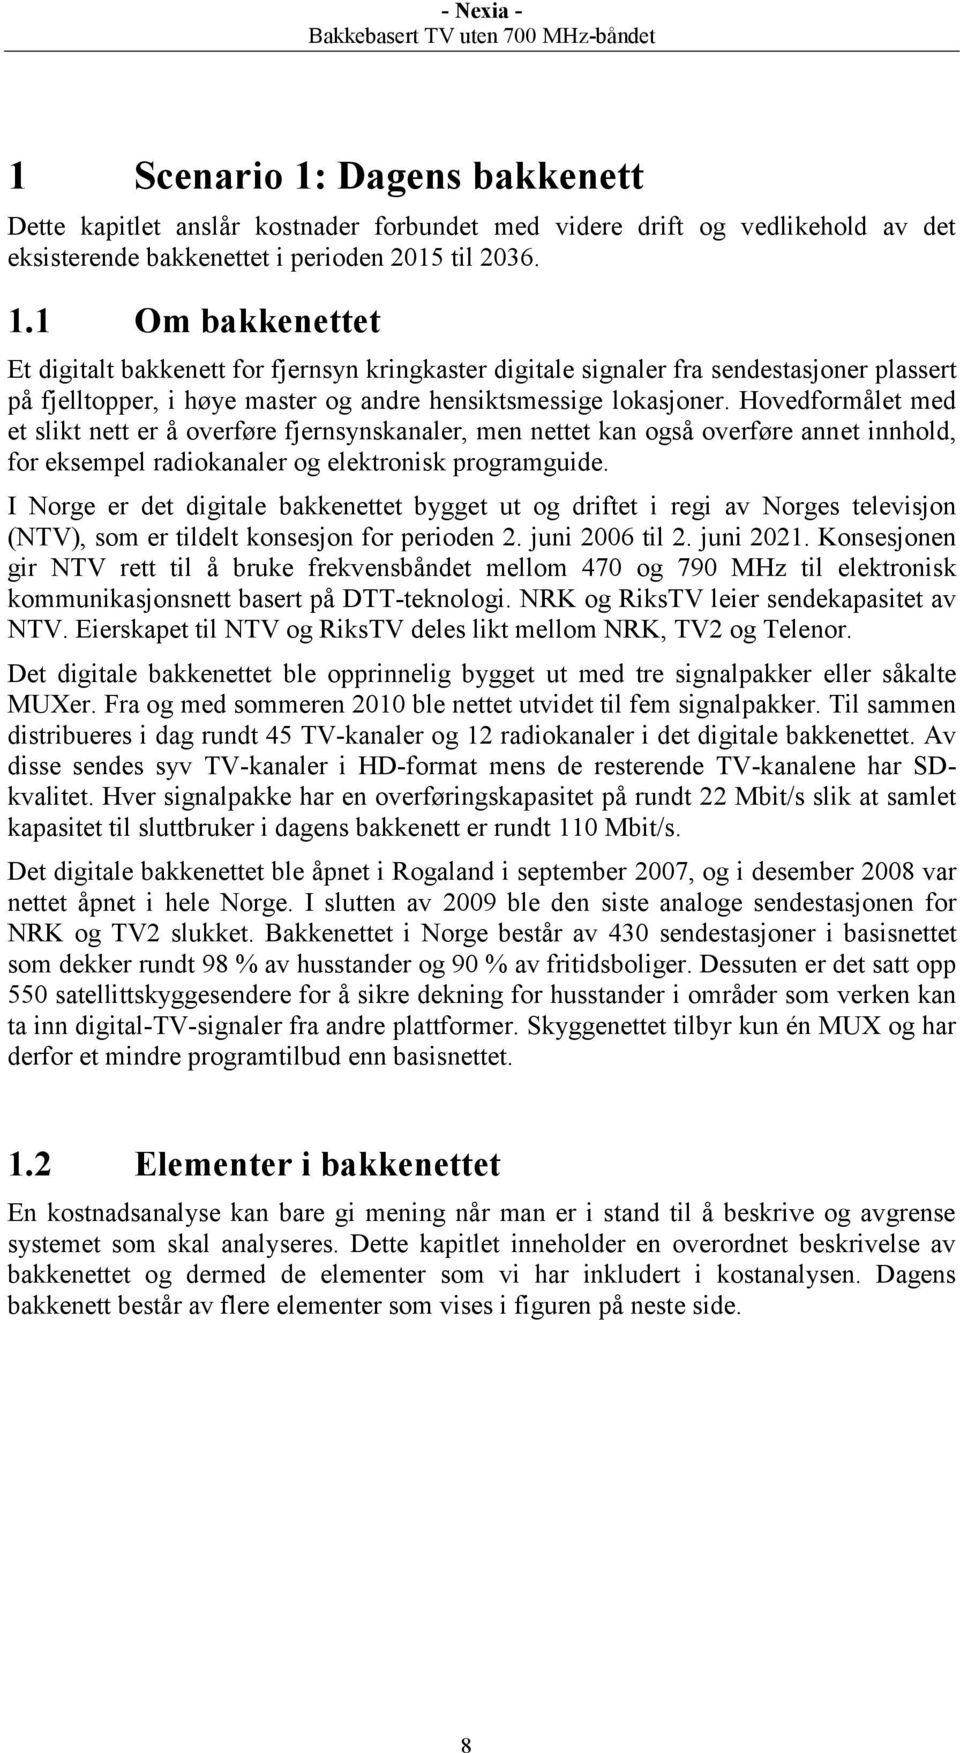 I Norge er det digitale bakkenettet bygget ut og driftet i regi av Norges televisjon (NTV), som er tildelt konsesjon for perioden 2. juni 2006 til 2. juni 2021.